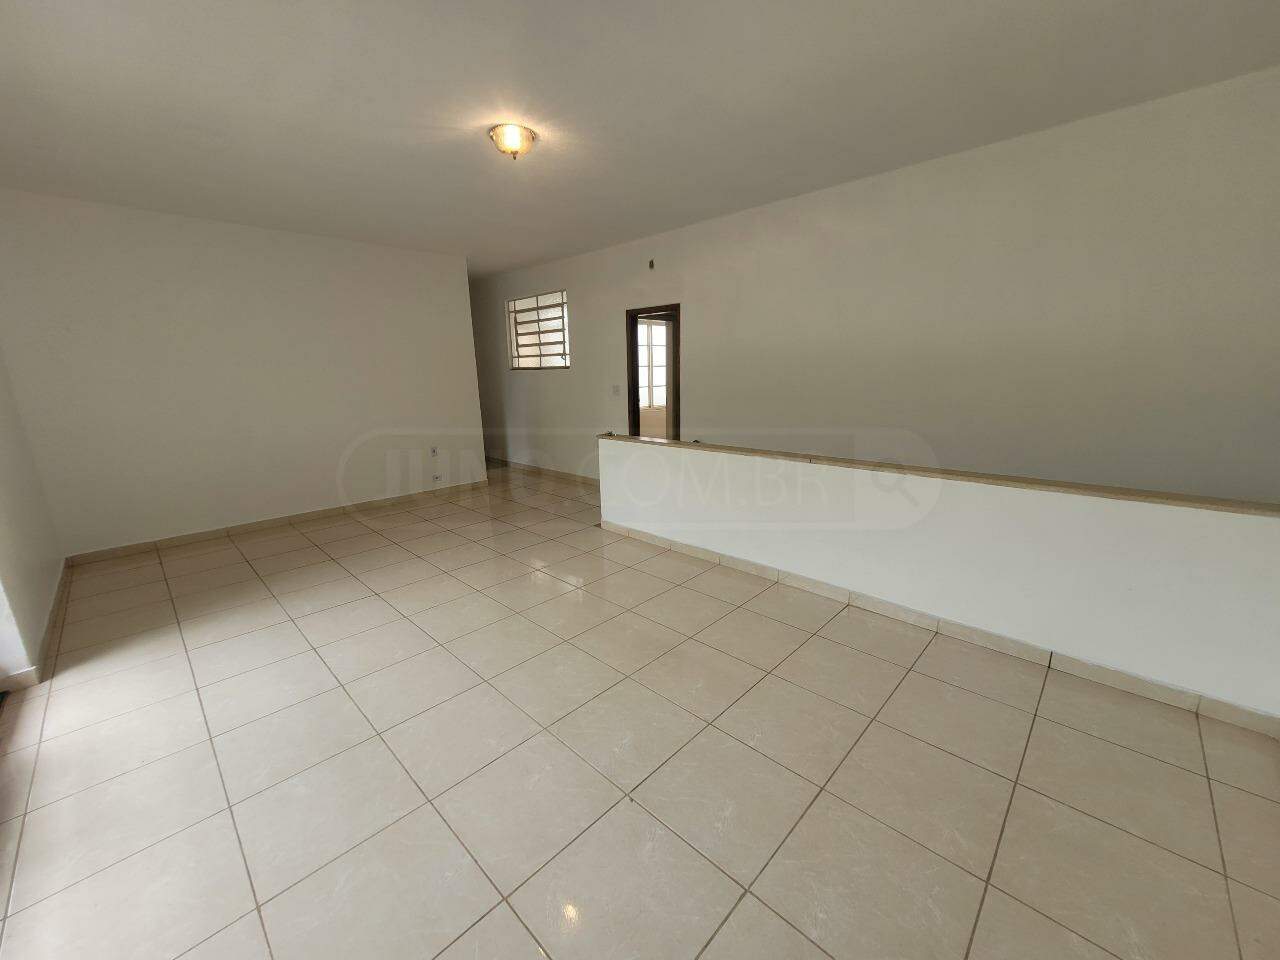 Casa para alugar, 3 quartos, no bairro Centro em Piracicaba - SP